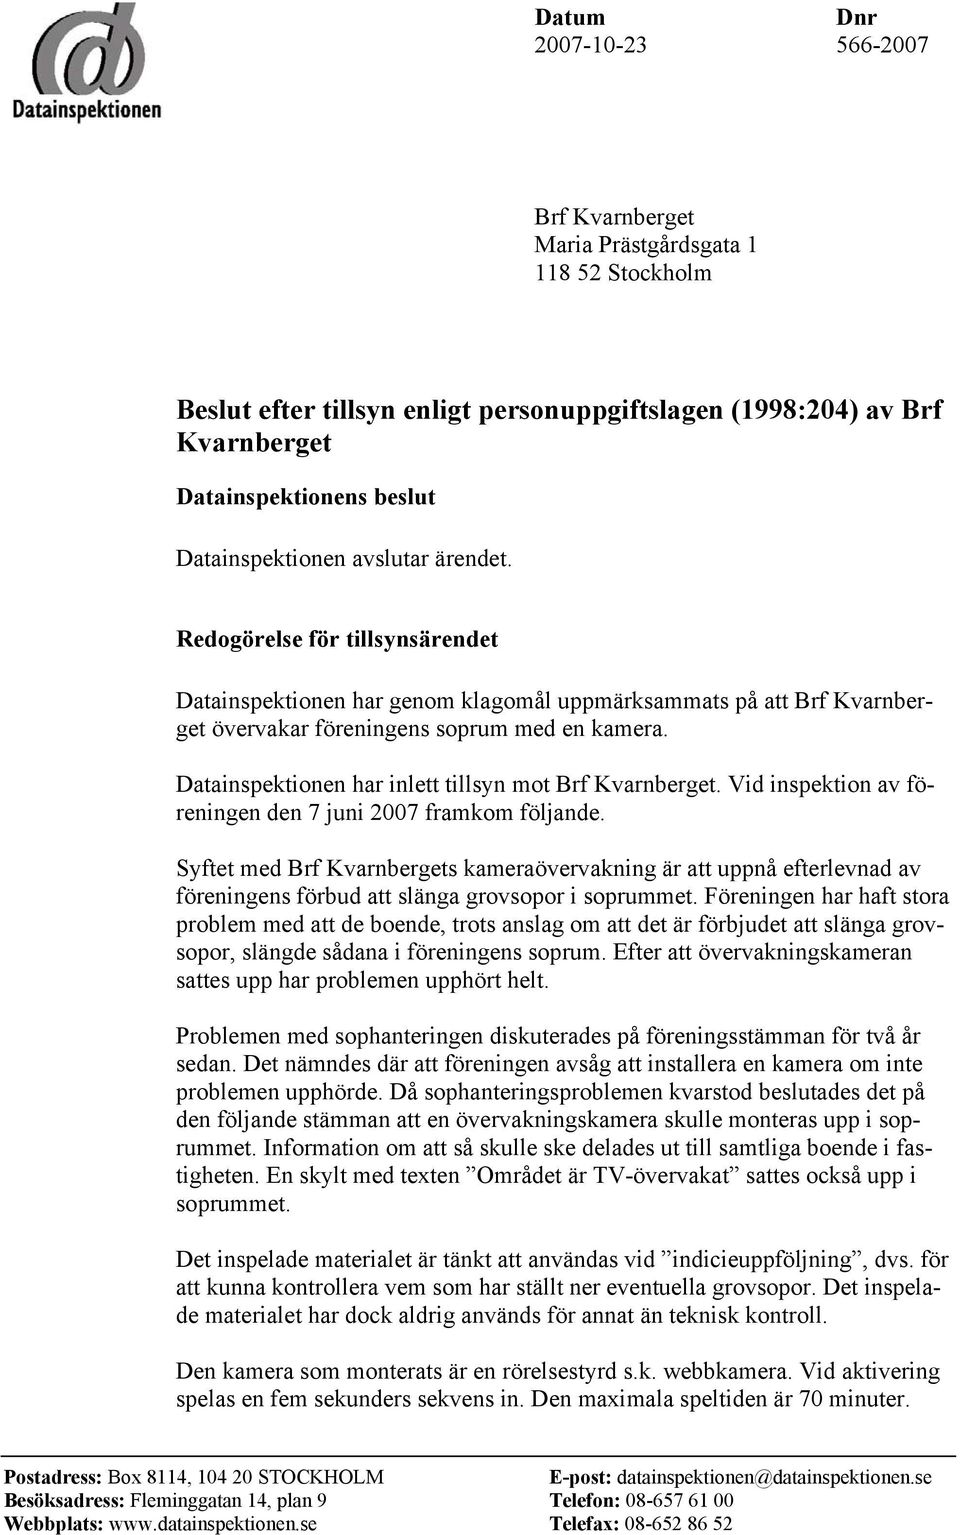 Datainspektionen har inlett tillsyn mot Brf Kvarnberget. Vid inspektion av föreningen den 7 juni 2007 framkom följande.